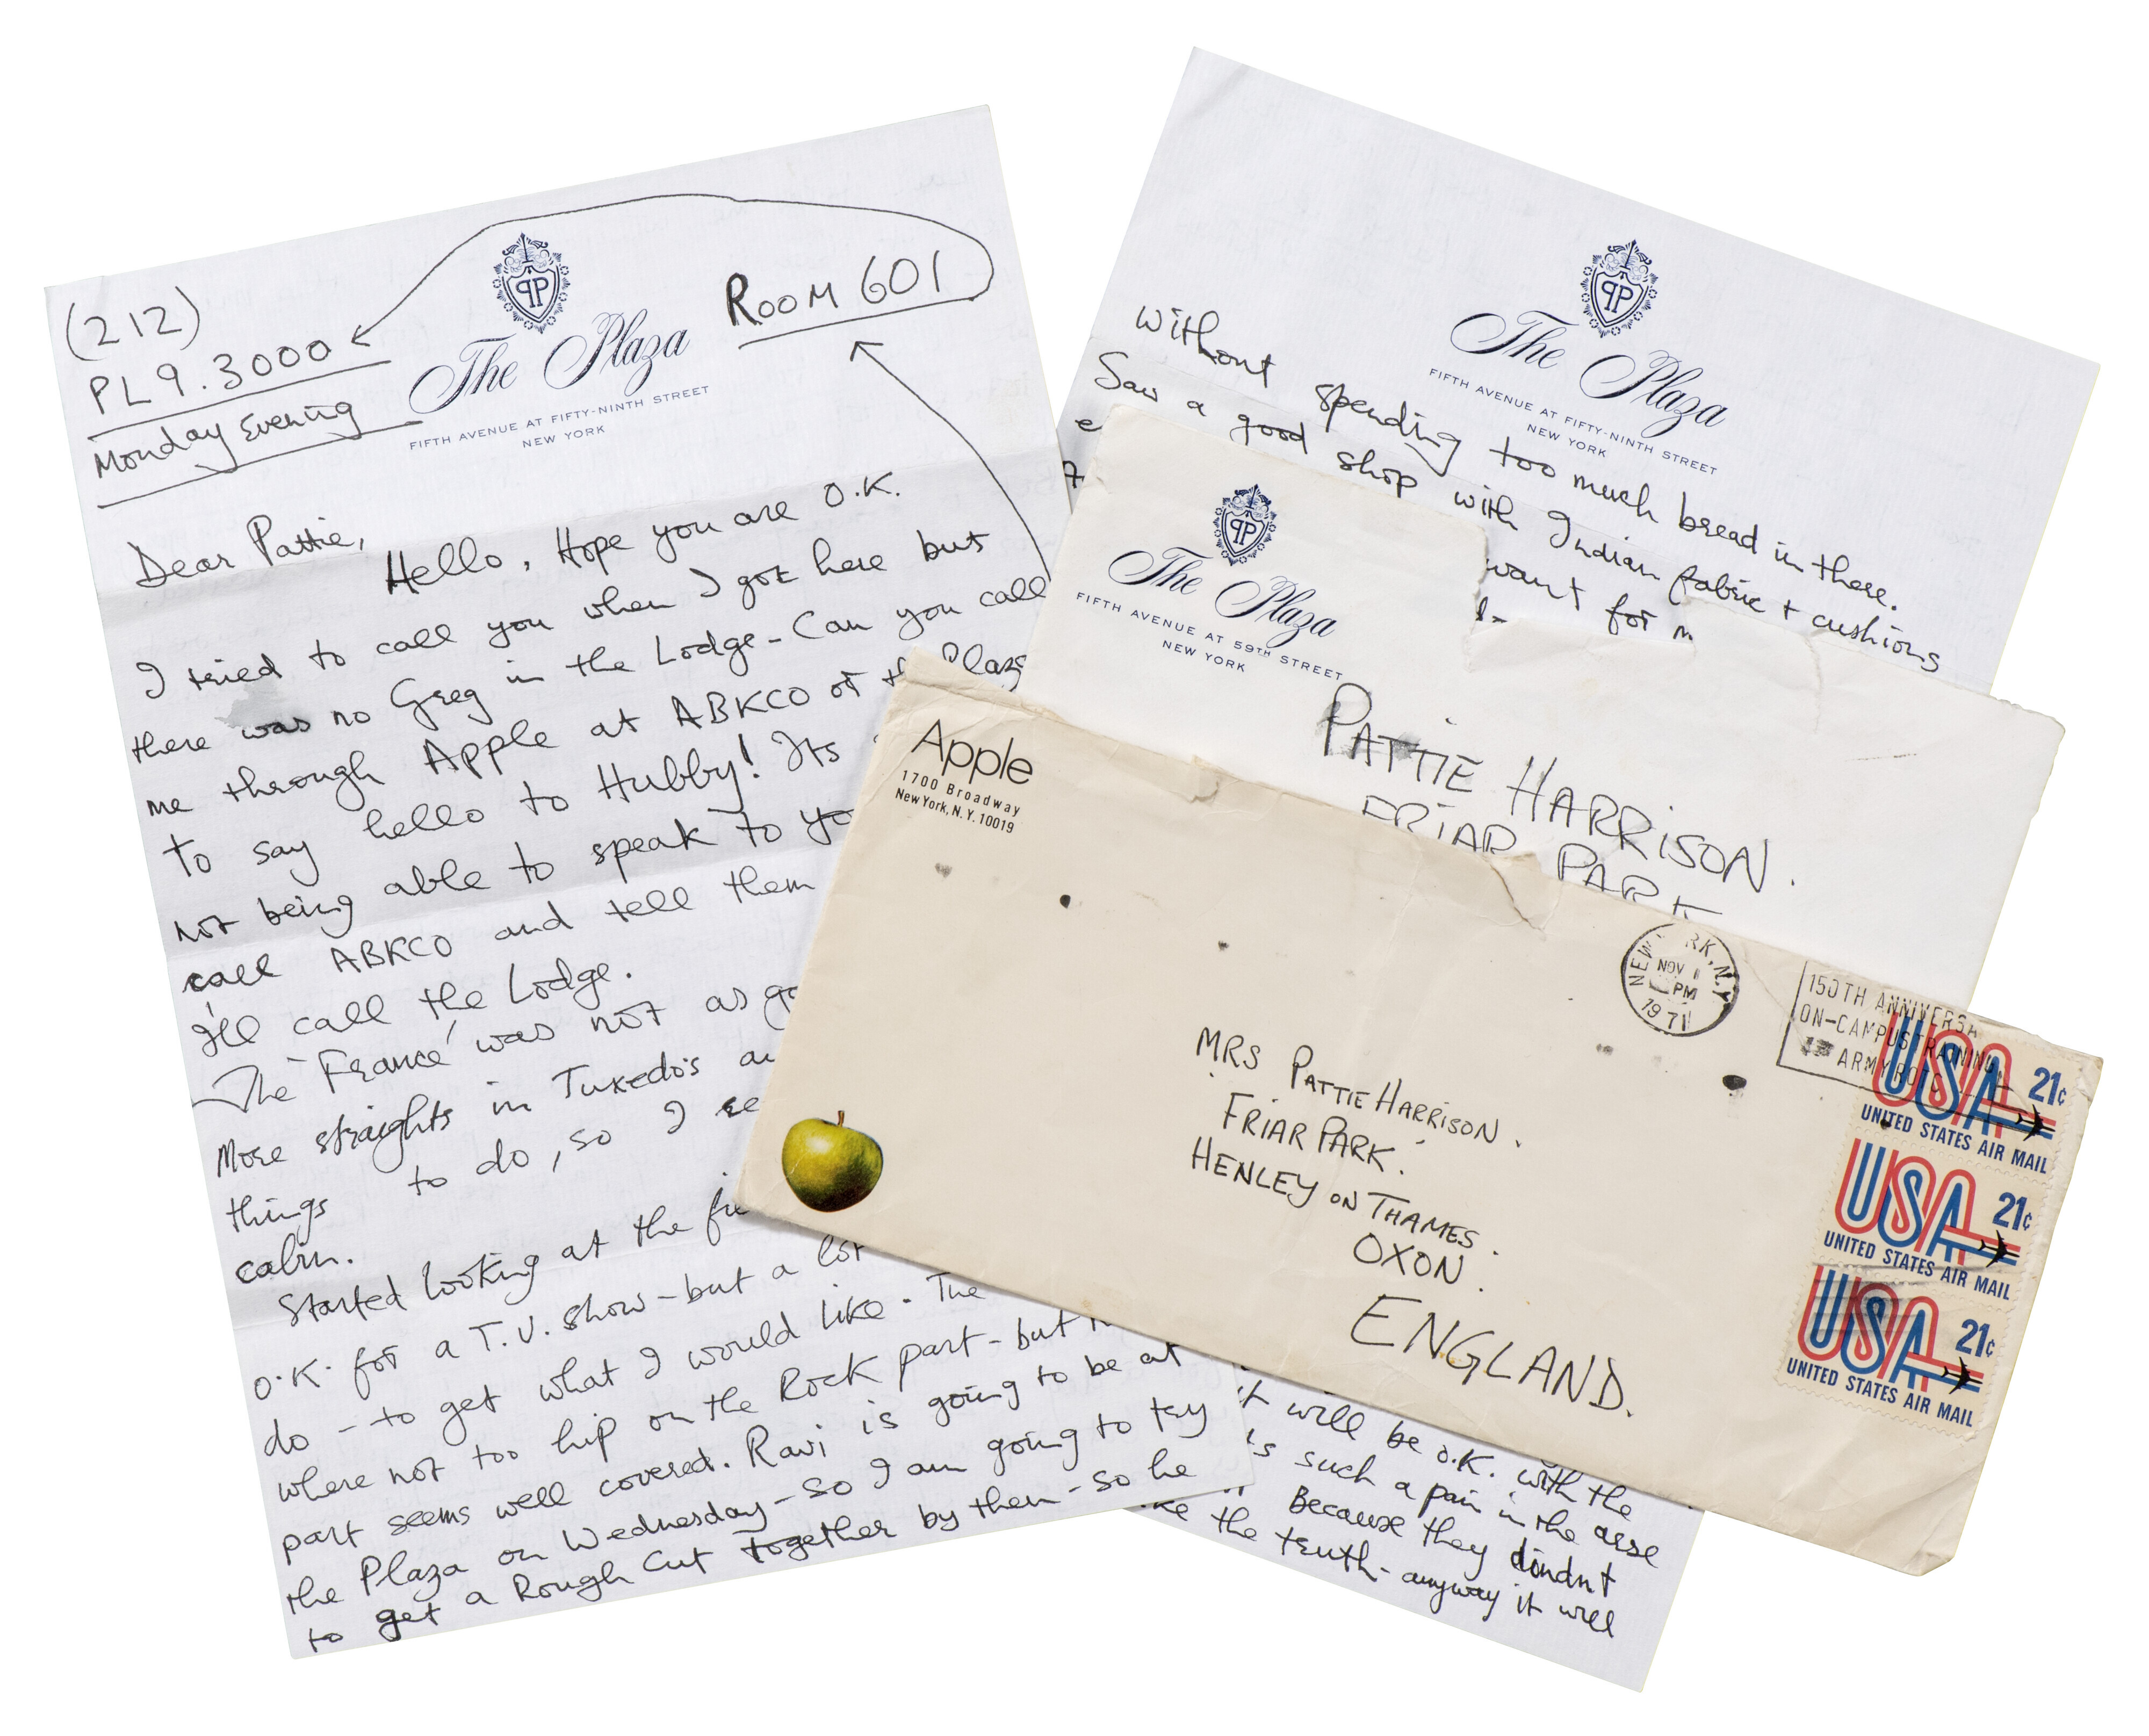 Pattie Boyd's letters